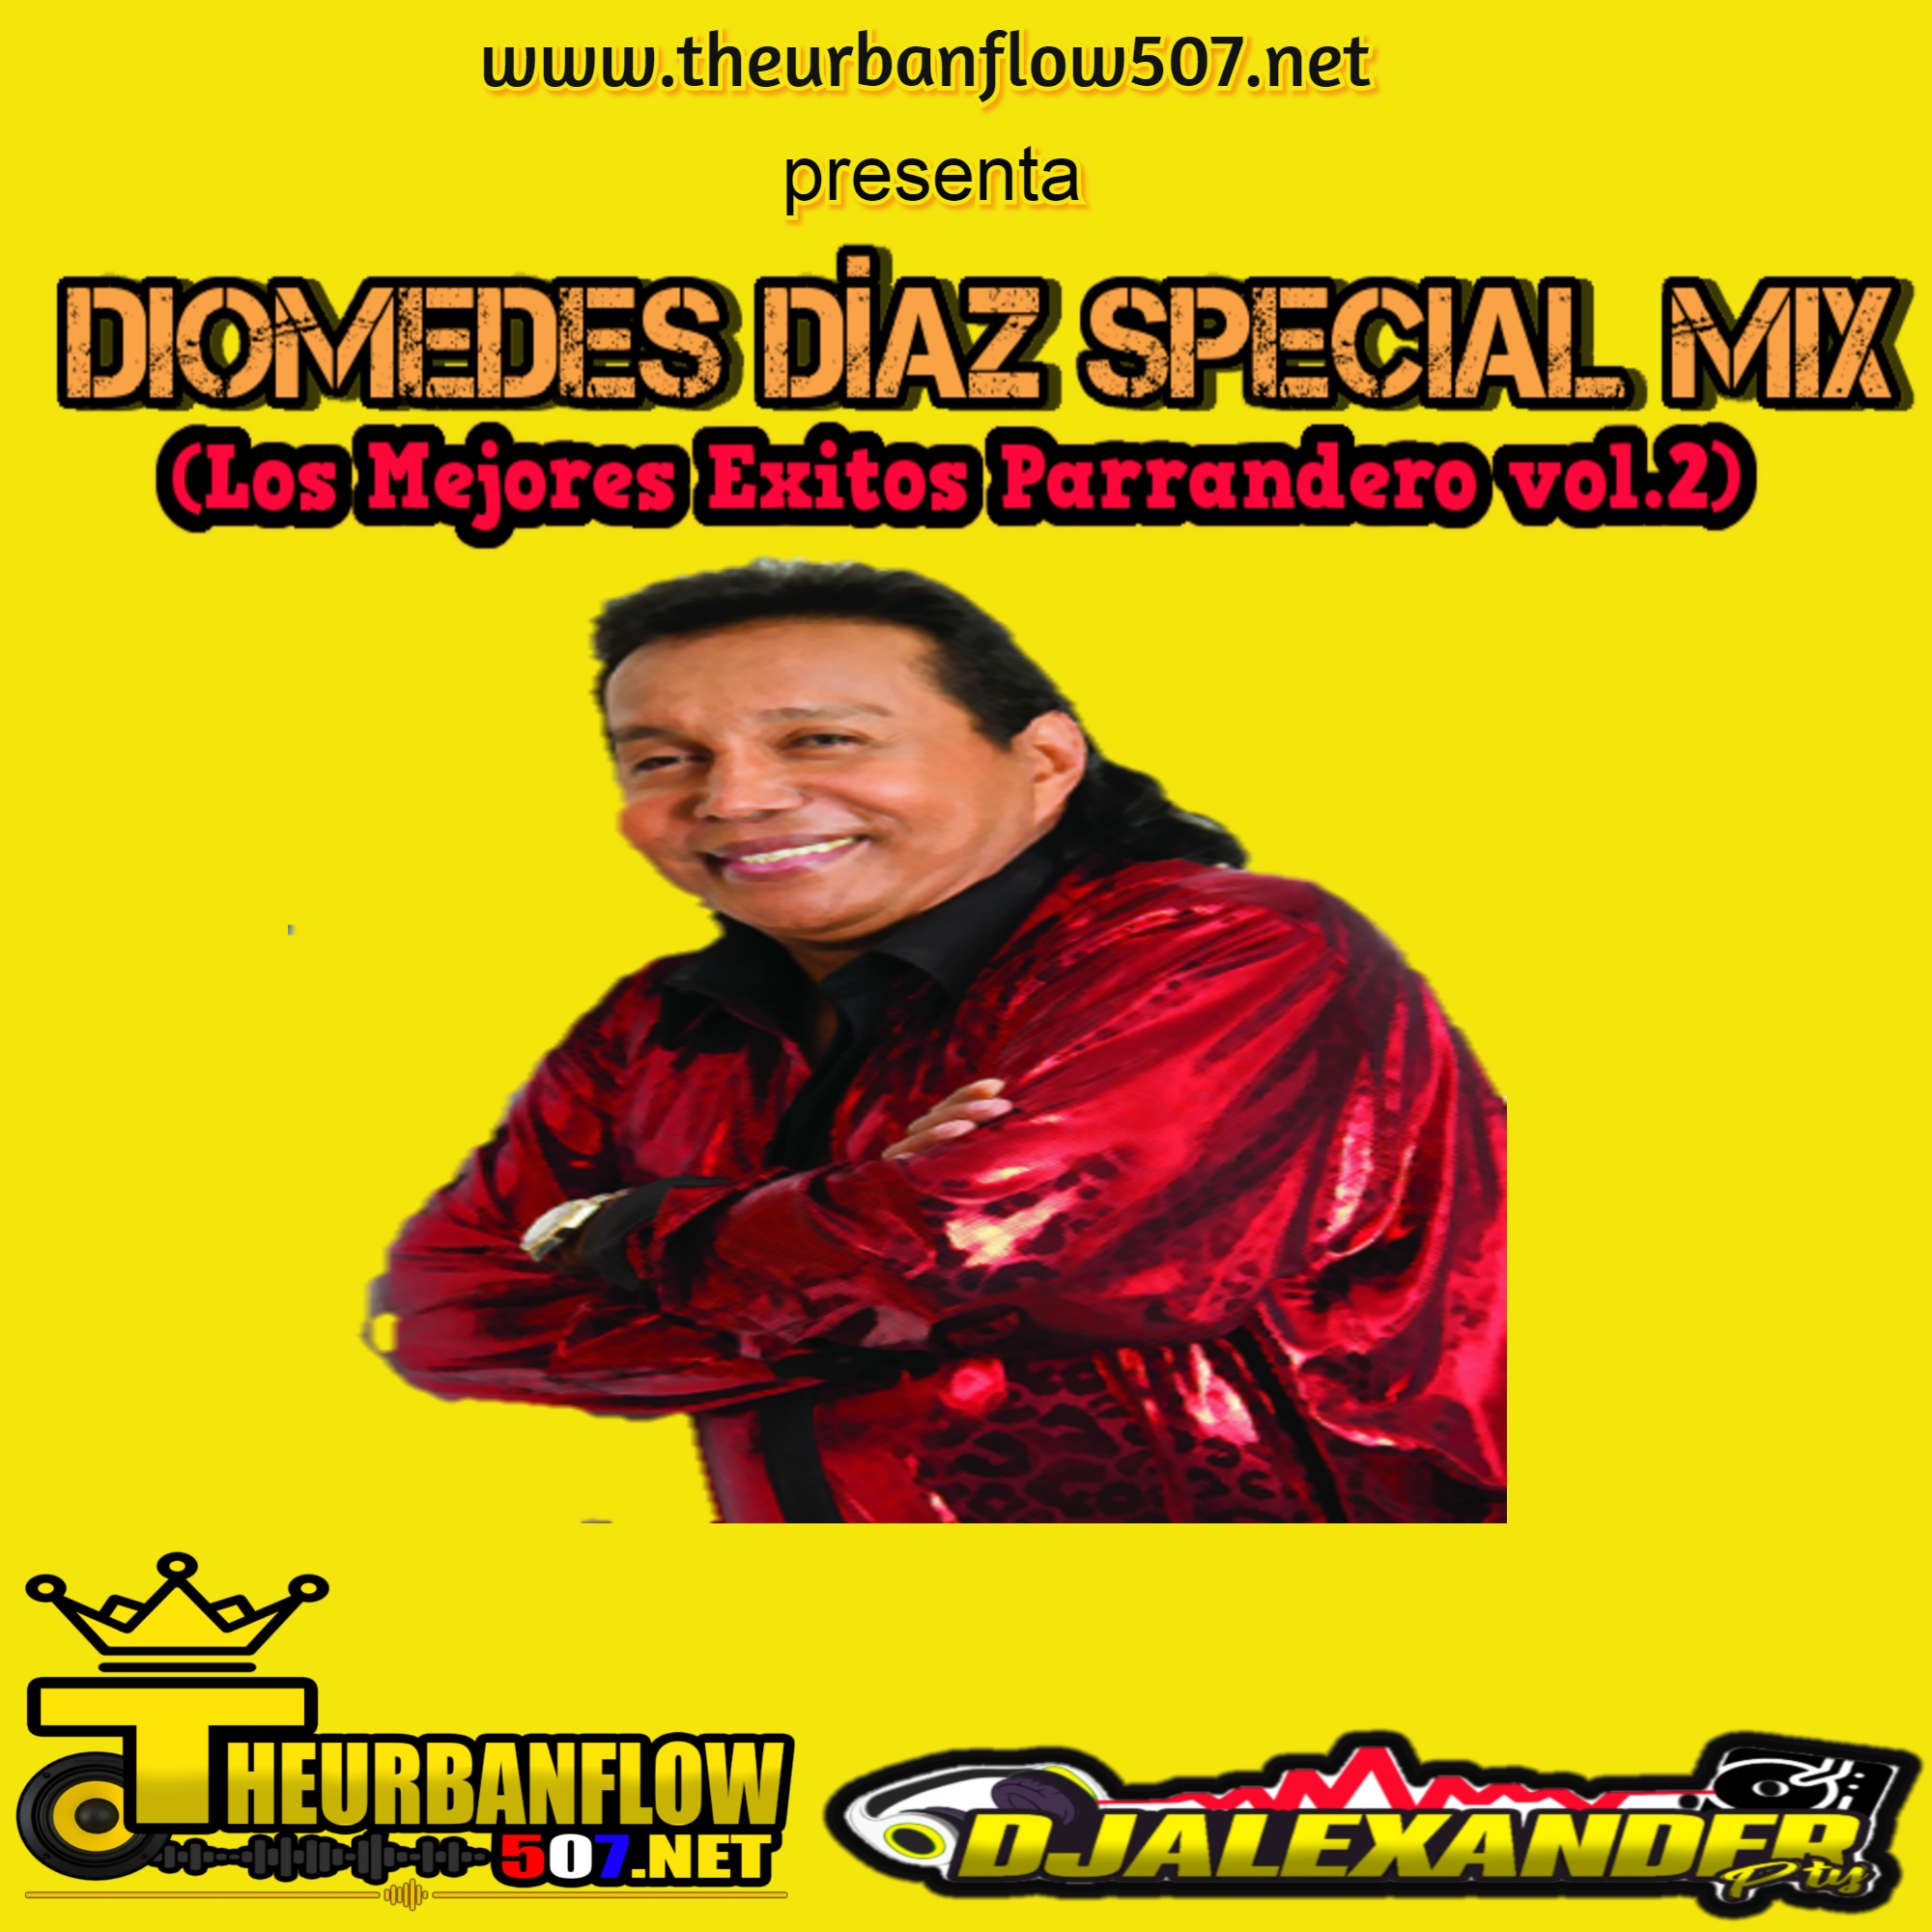 histórico Soldado estimular Diomedes Diaz Special Mix( Los mejores Exitos Parrandero vol.2 ) -  @DjAlexanderpty - Theurbanflow507.NET